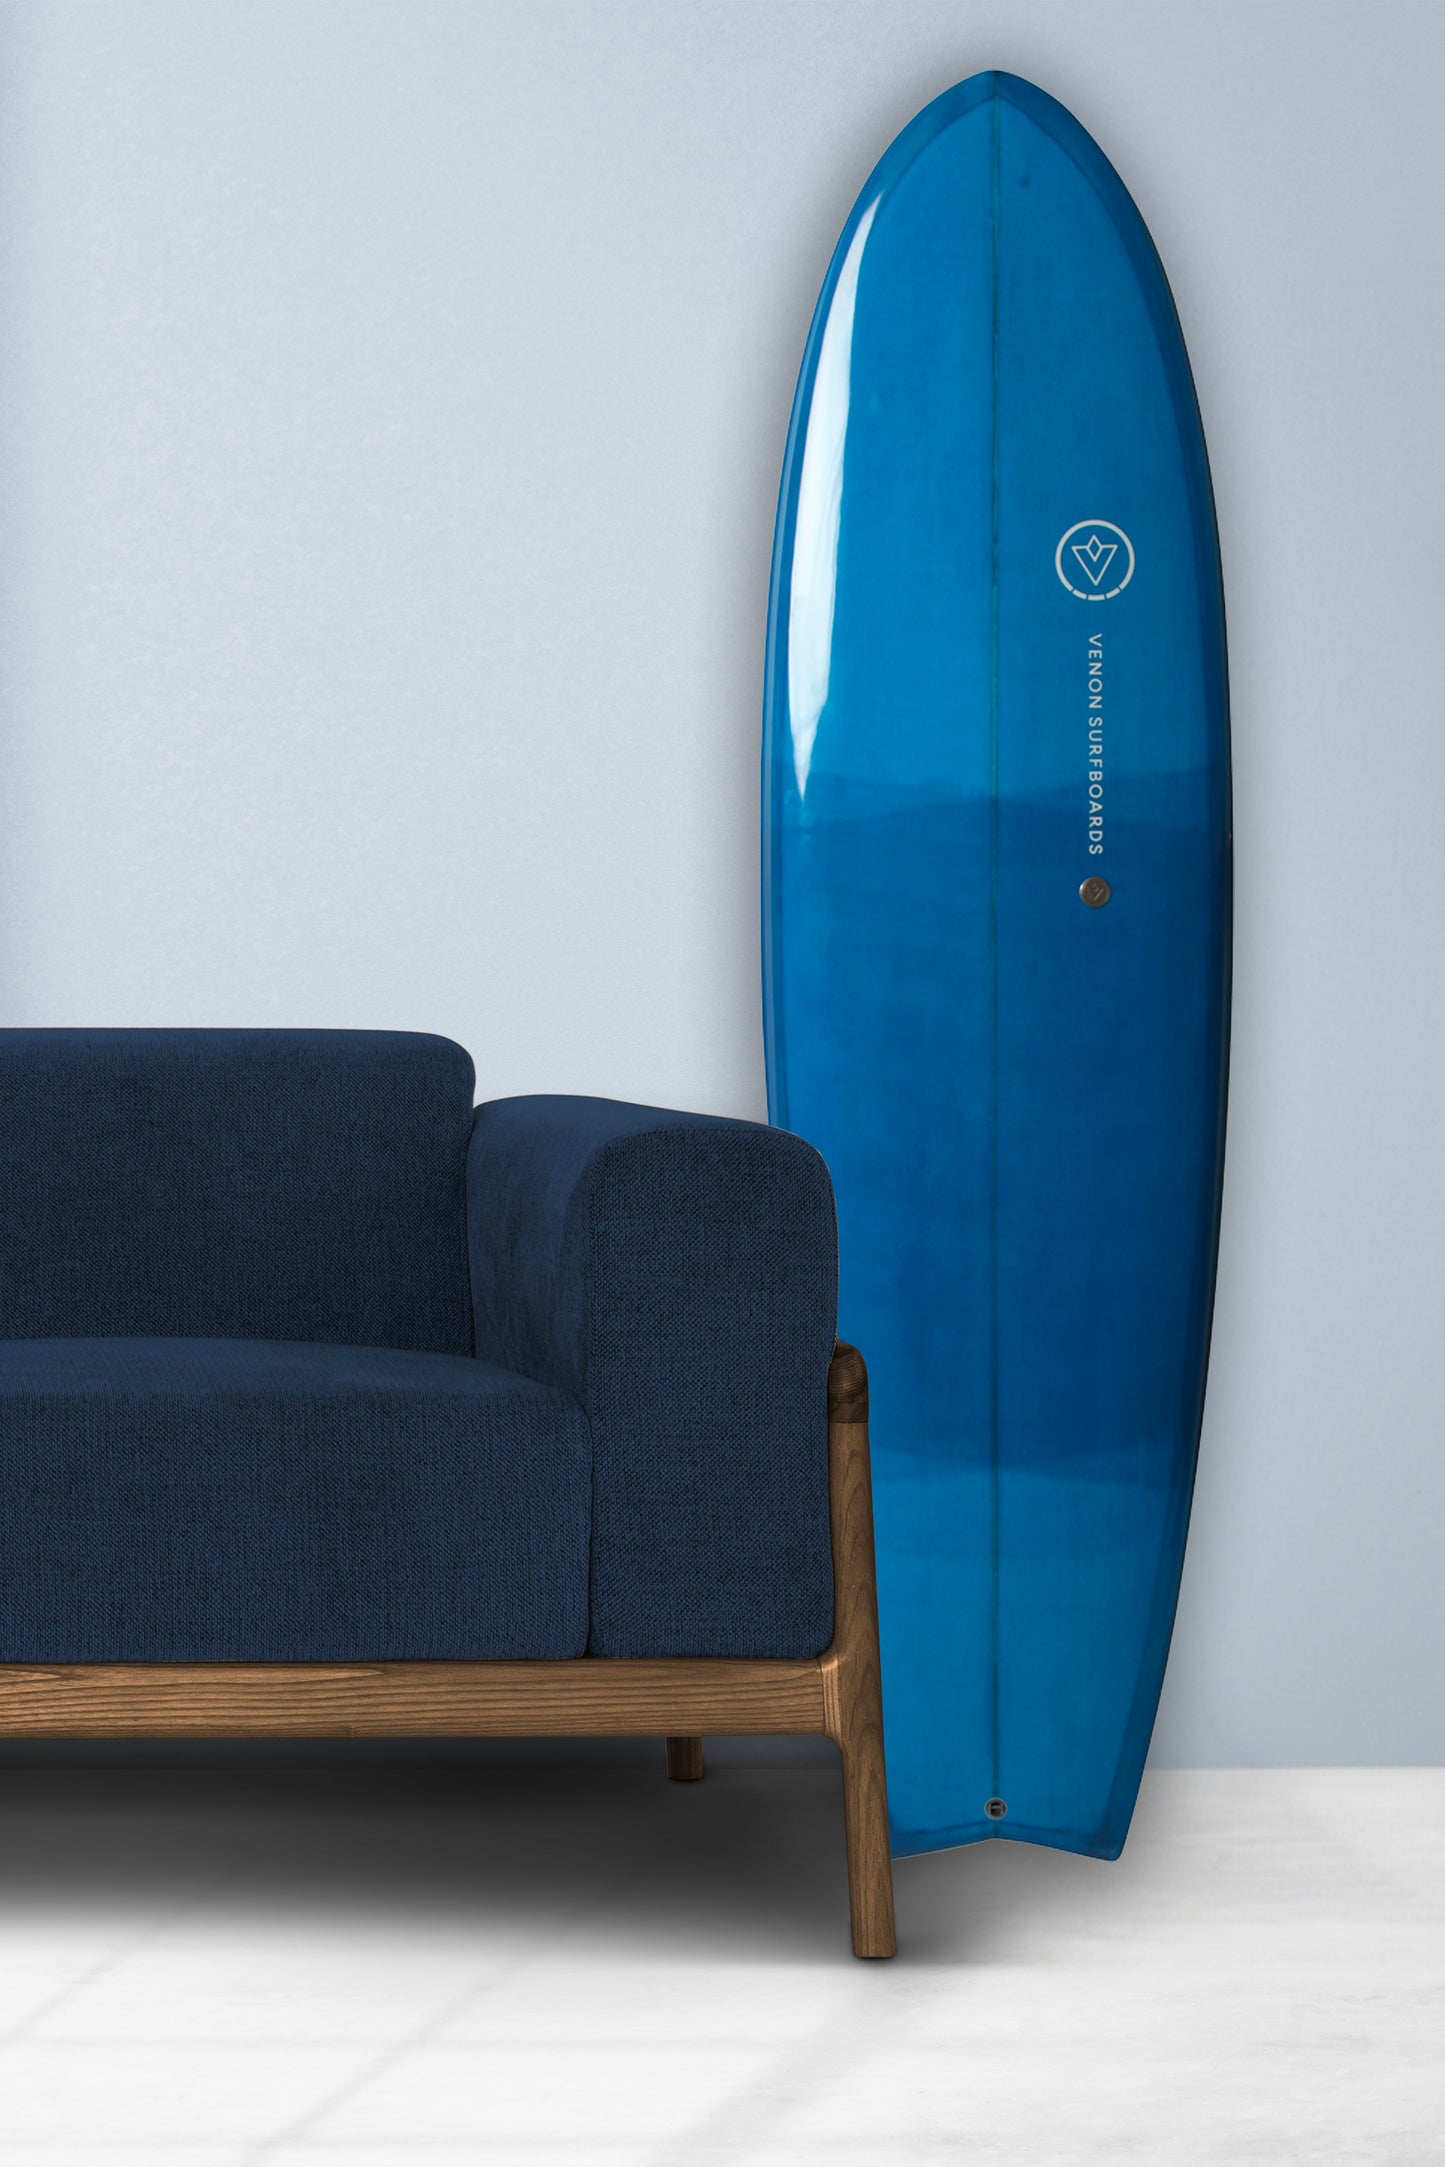 Décoration Planche de Surf - Spectre - Double Couche Bleu Foncé